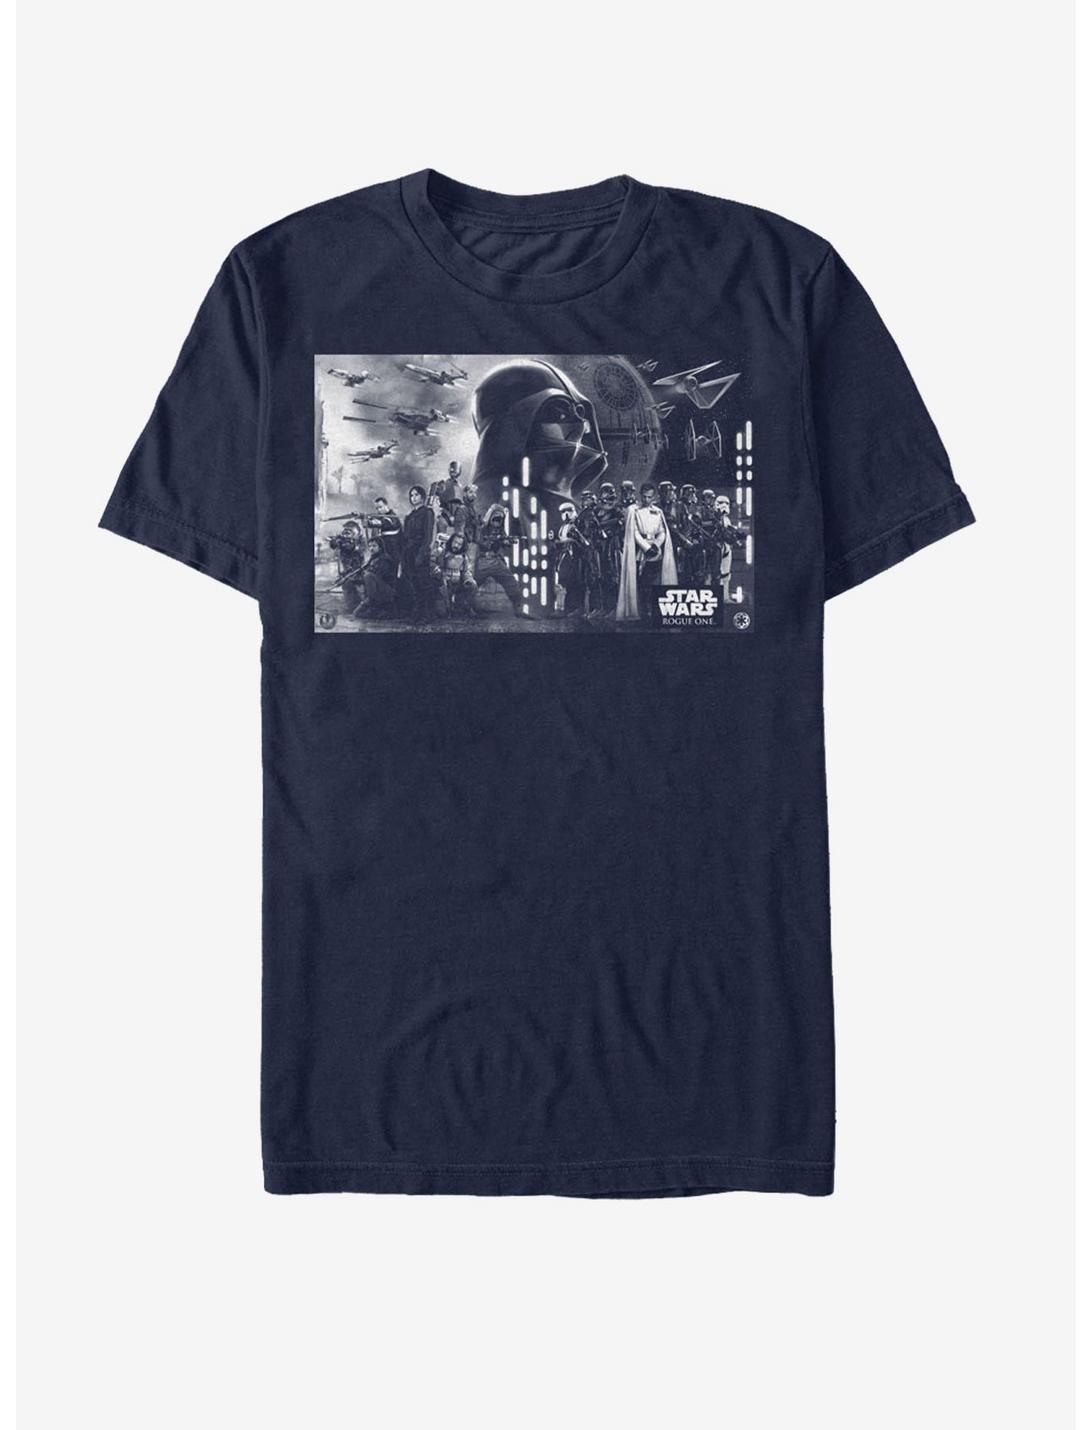 Star Wars Death Star Battle Groupshot T-Shirt, NAVY, hi-res